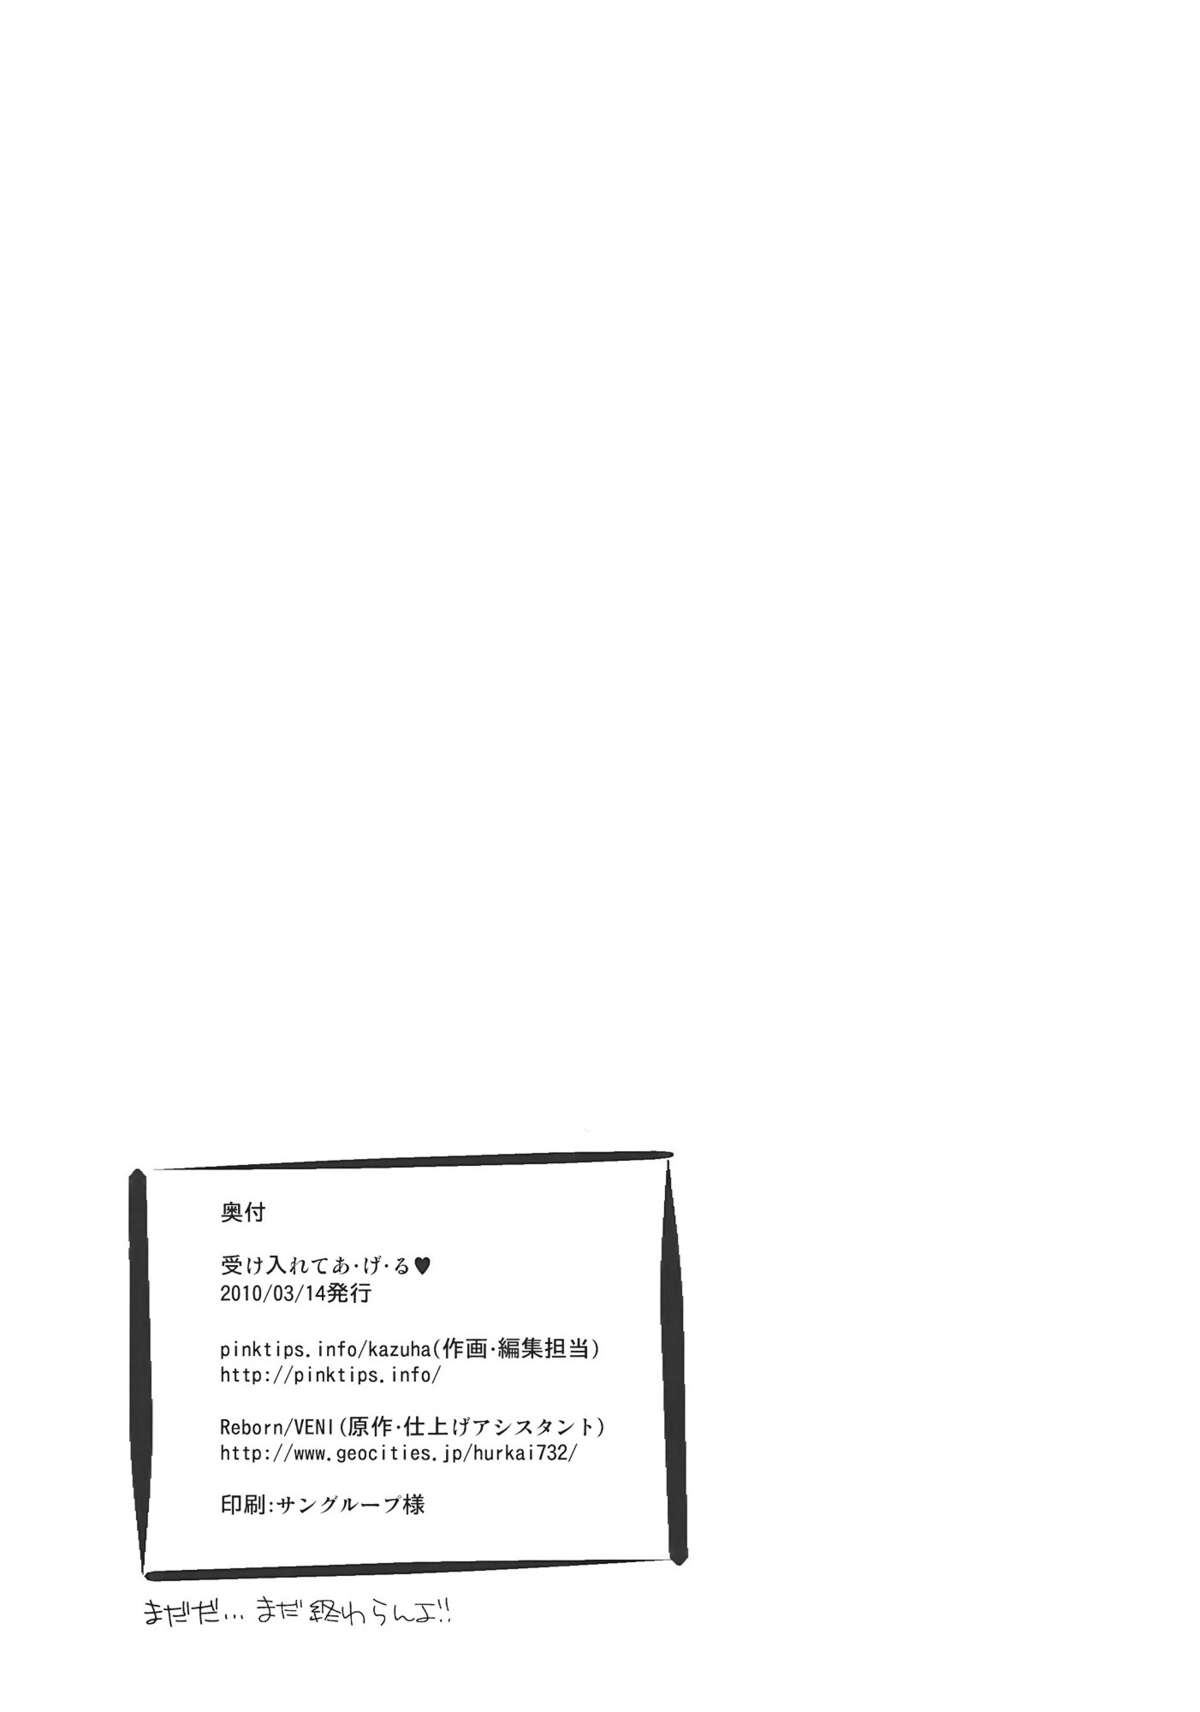 (例大祭7) [pinktips.Info, ReBorn (Kazuha, VENI)] 受け入れてあ・げ・る (東方Project)